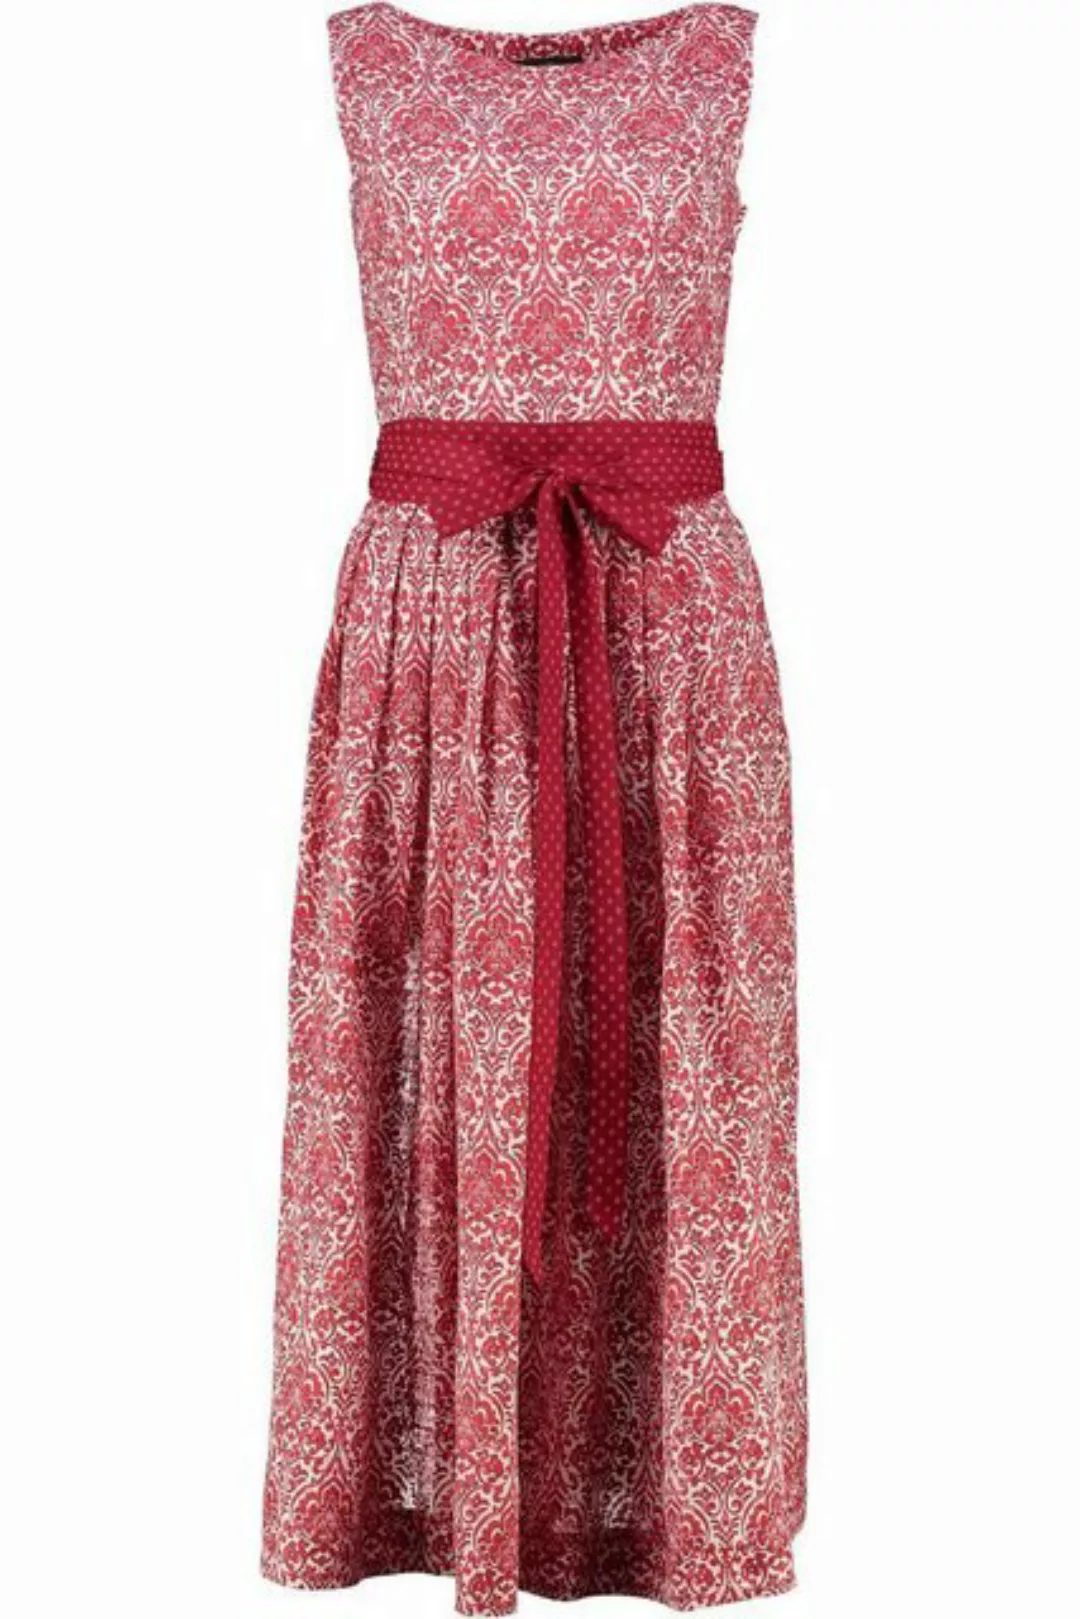 Hammerschmid Trachtenkleid Sommerkleid - SURSEE - rot günstig online kaufen